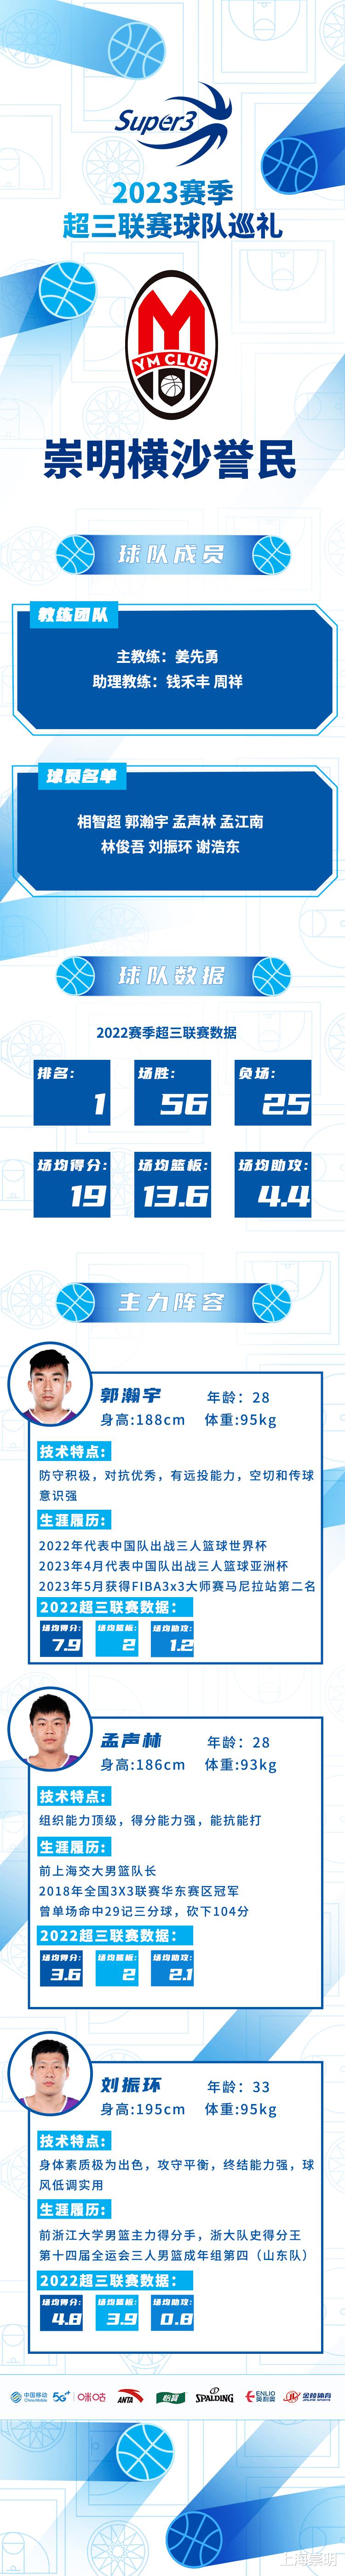 上海誉民篮球俱乐部2023赛季，出征！(6)